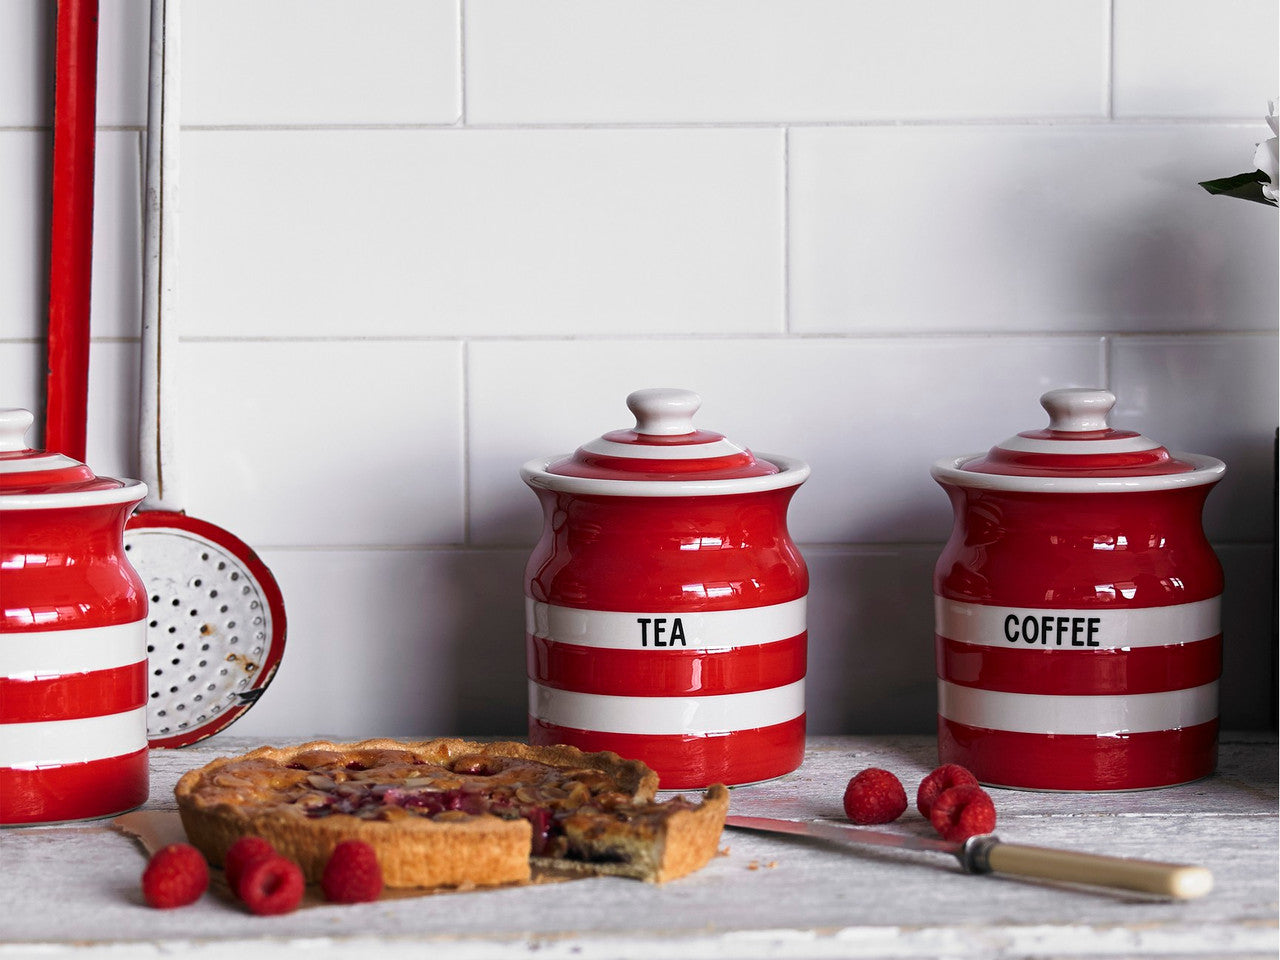 Cornishware Striped Tea Storage Jar - red